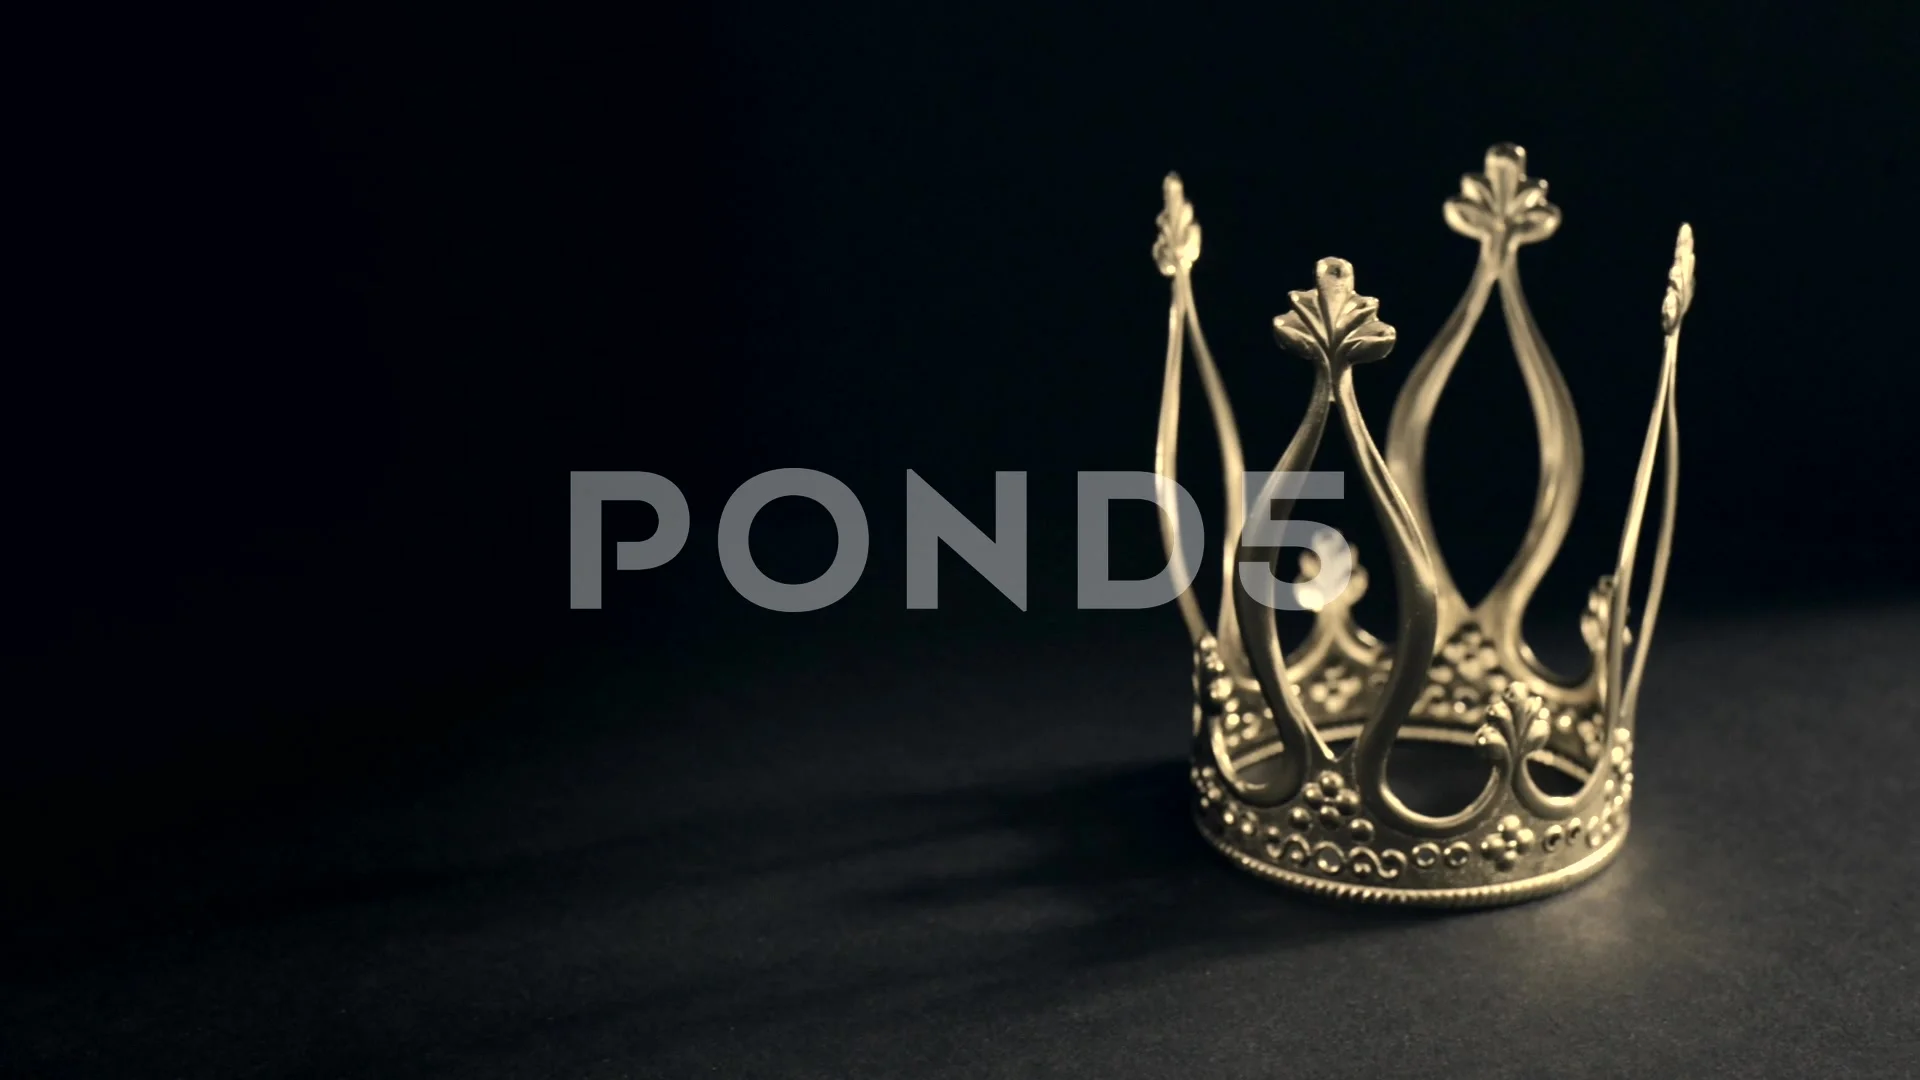 Vẻ đẹp sang trọng và đẳng cấp của vương miện vàng hoàng gia trên nền đen sẽ thực sự làm bạn say đắm. Sự kết hợp tinh tế giữa hai yếu tố này mang lại một bức ảnh độc đáo và tuyệt vời để bạn xem.